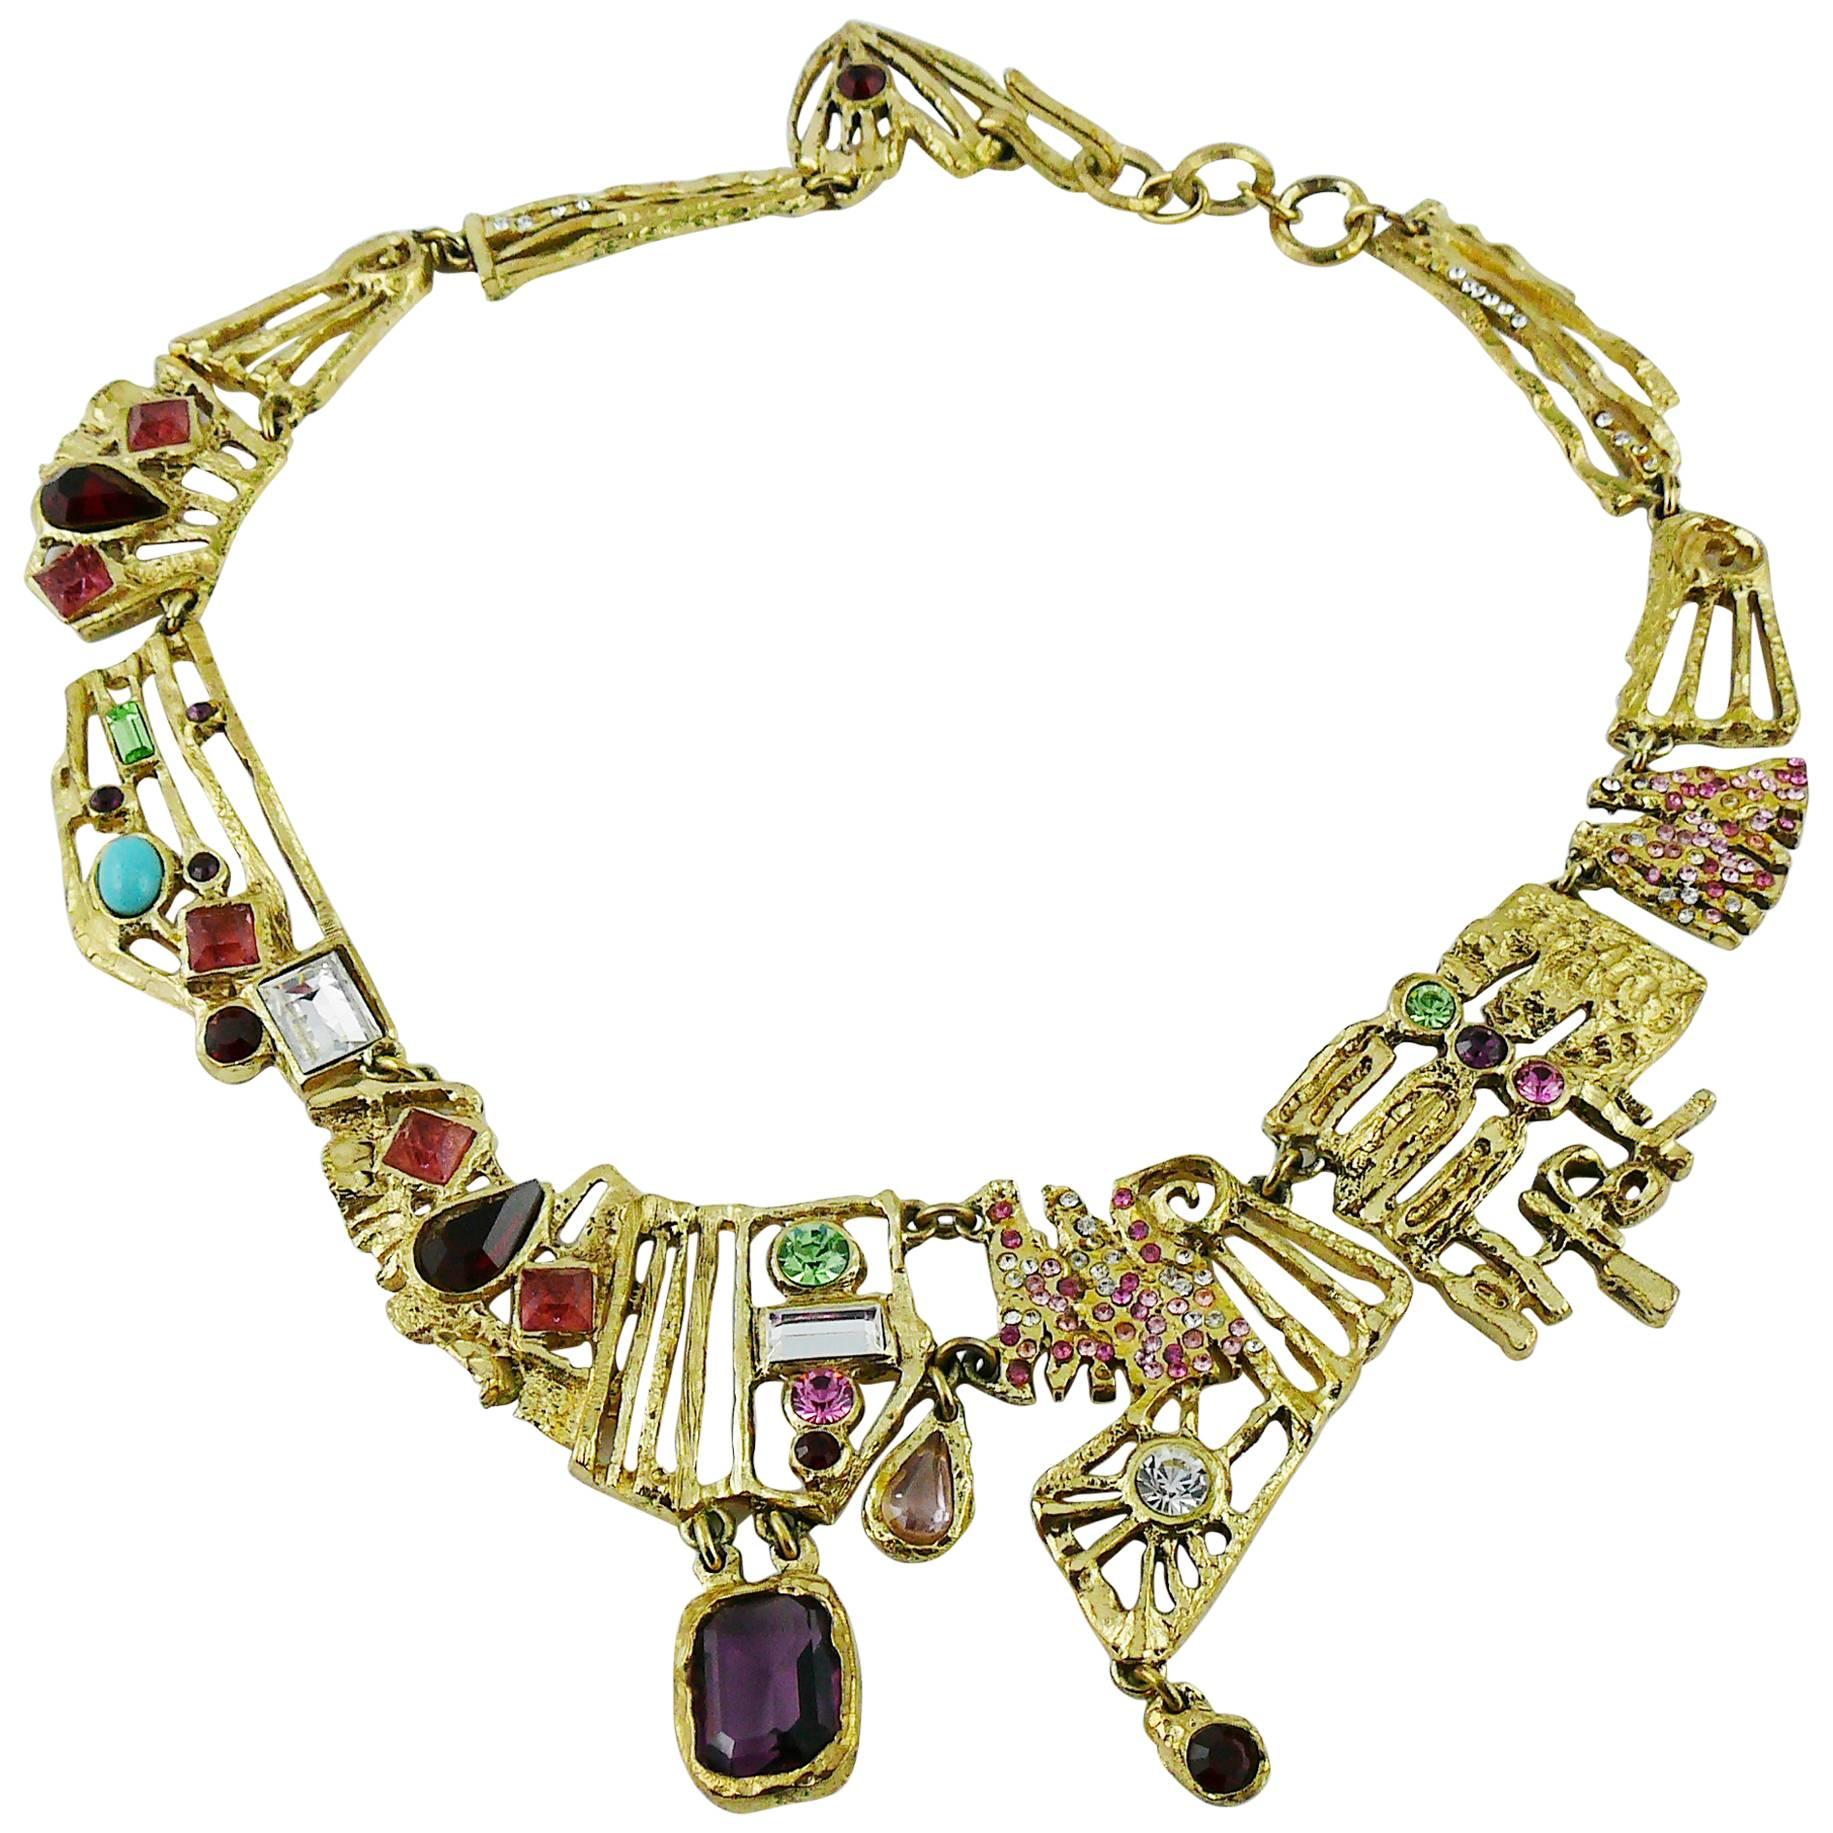 Christian Lacroix Vintage Bejeweled Brutalist Necklace